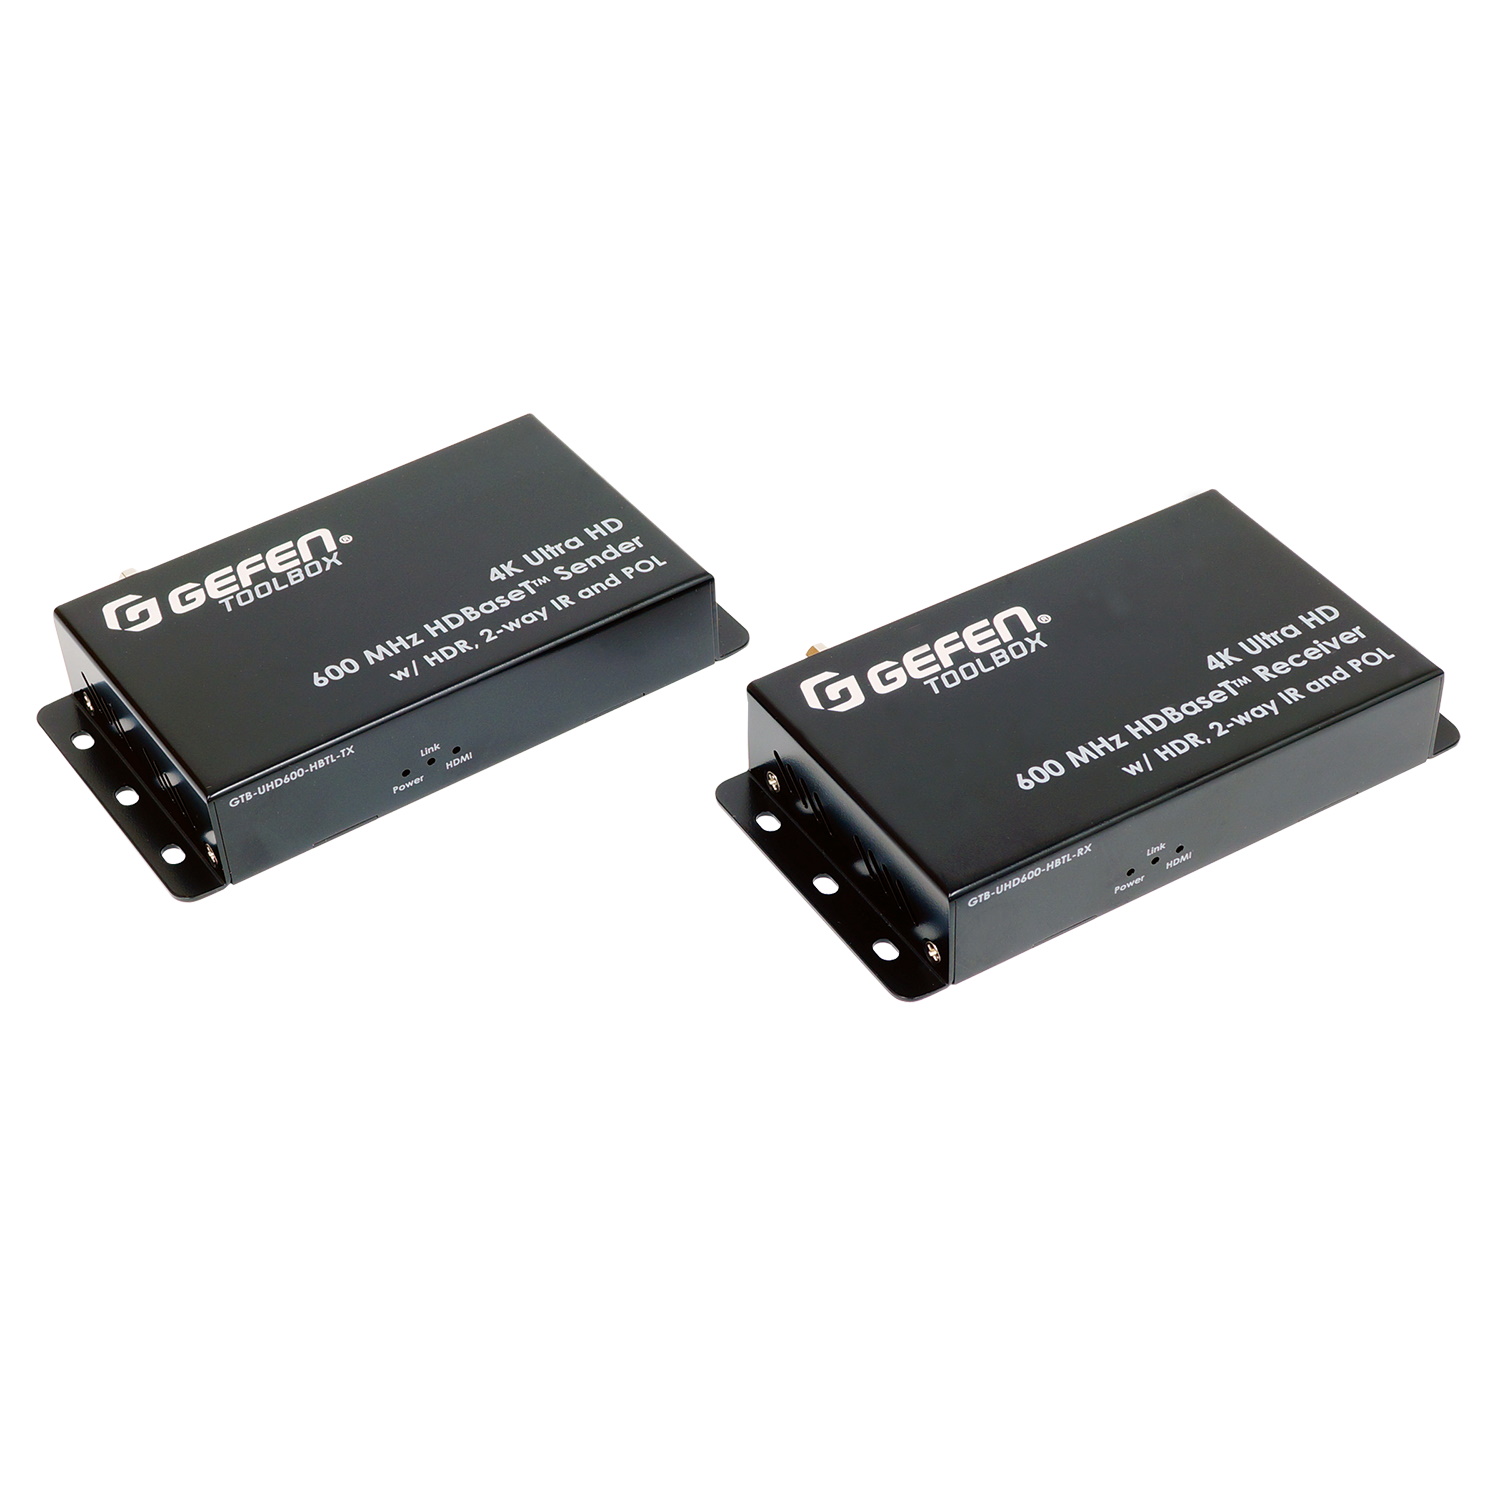 HDMI коммутаторы, разветвители, повторители Gefen GTB-UHD600-HBTL hdmi коммутаторы разветвители повторители gefen ext uhd600 41